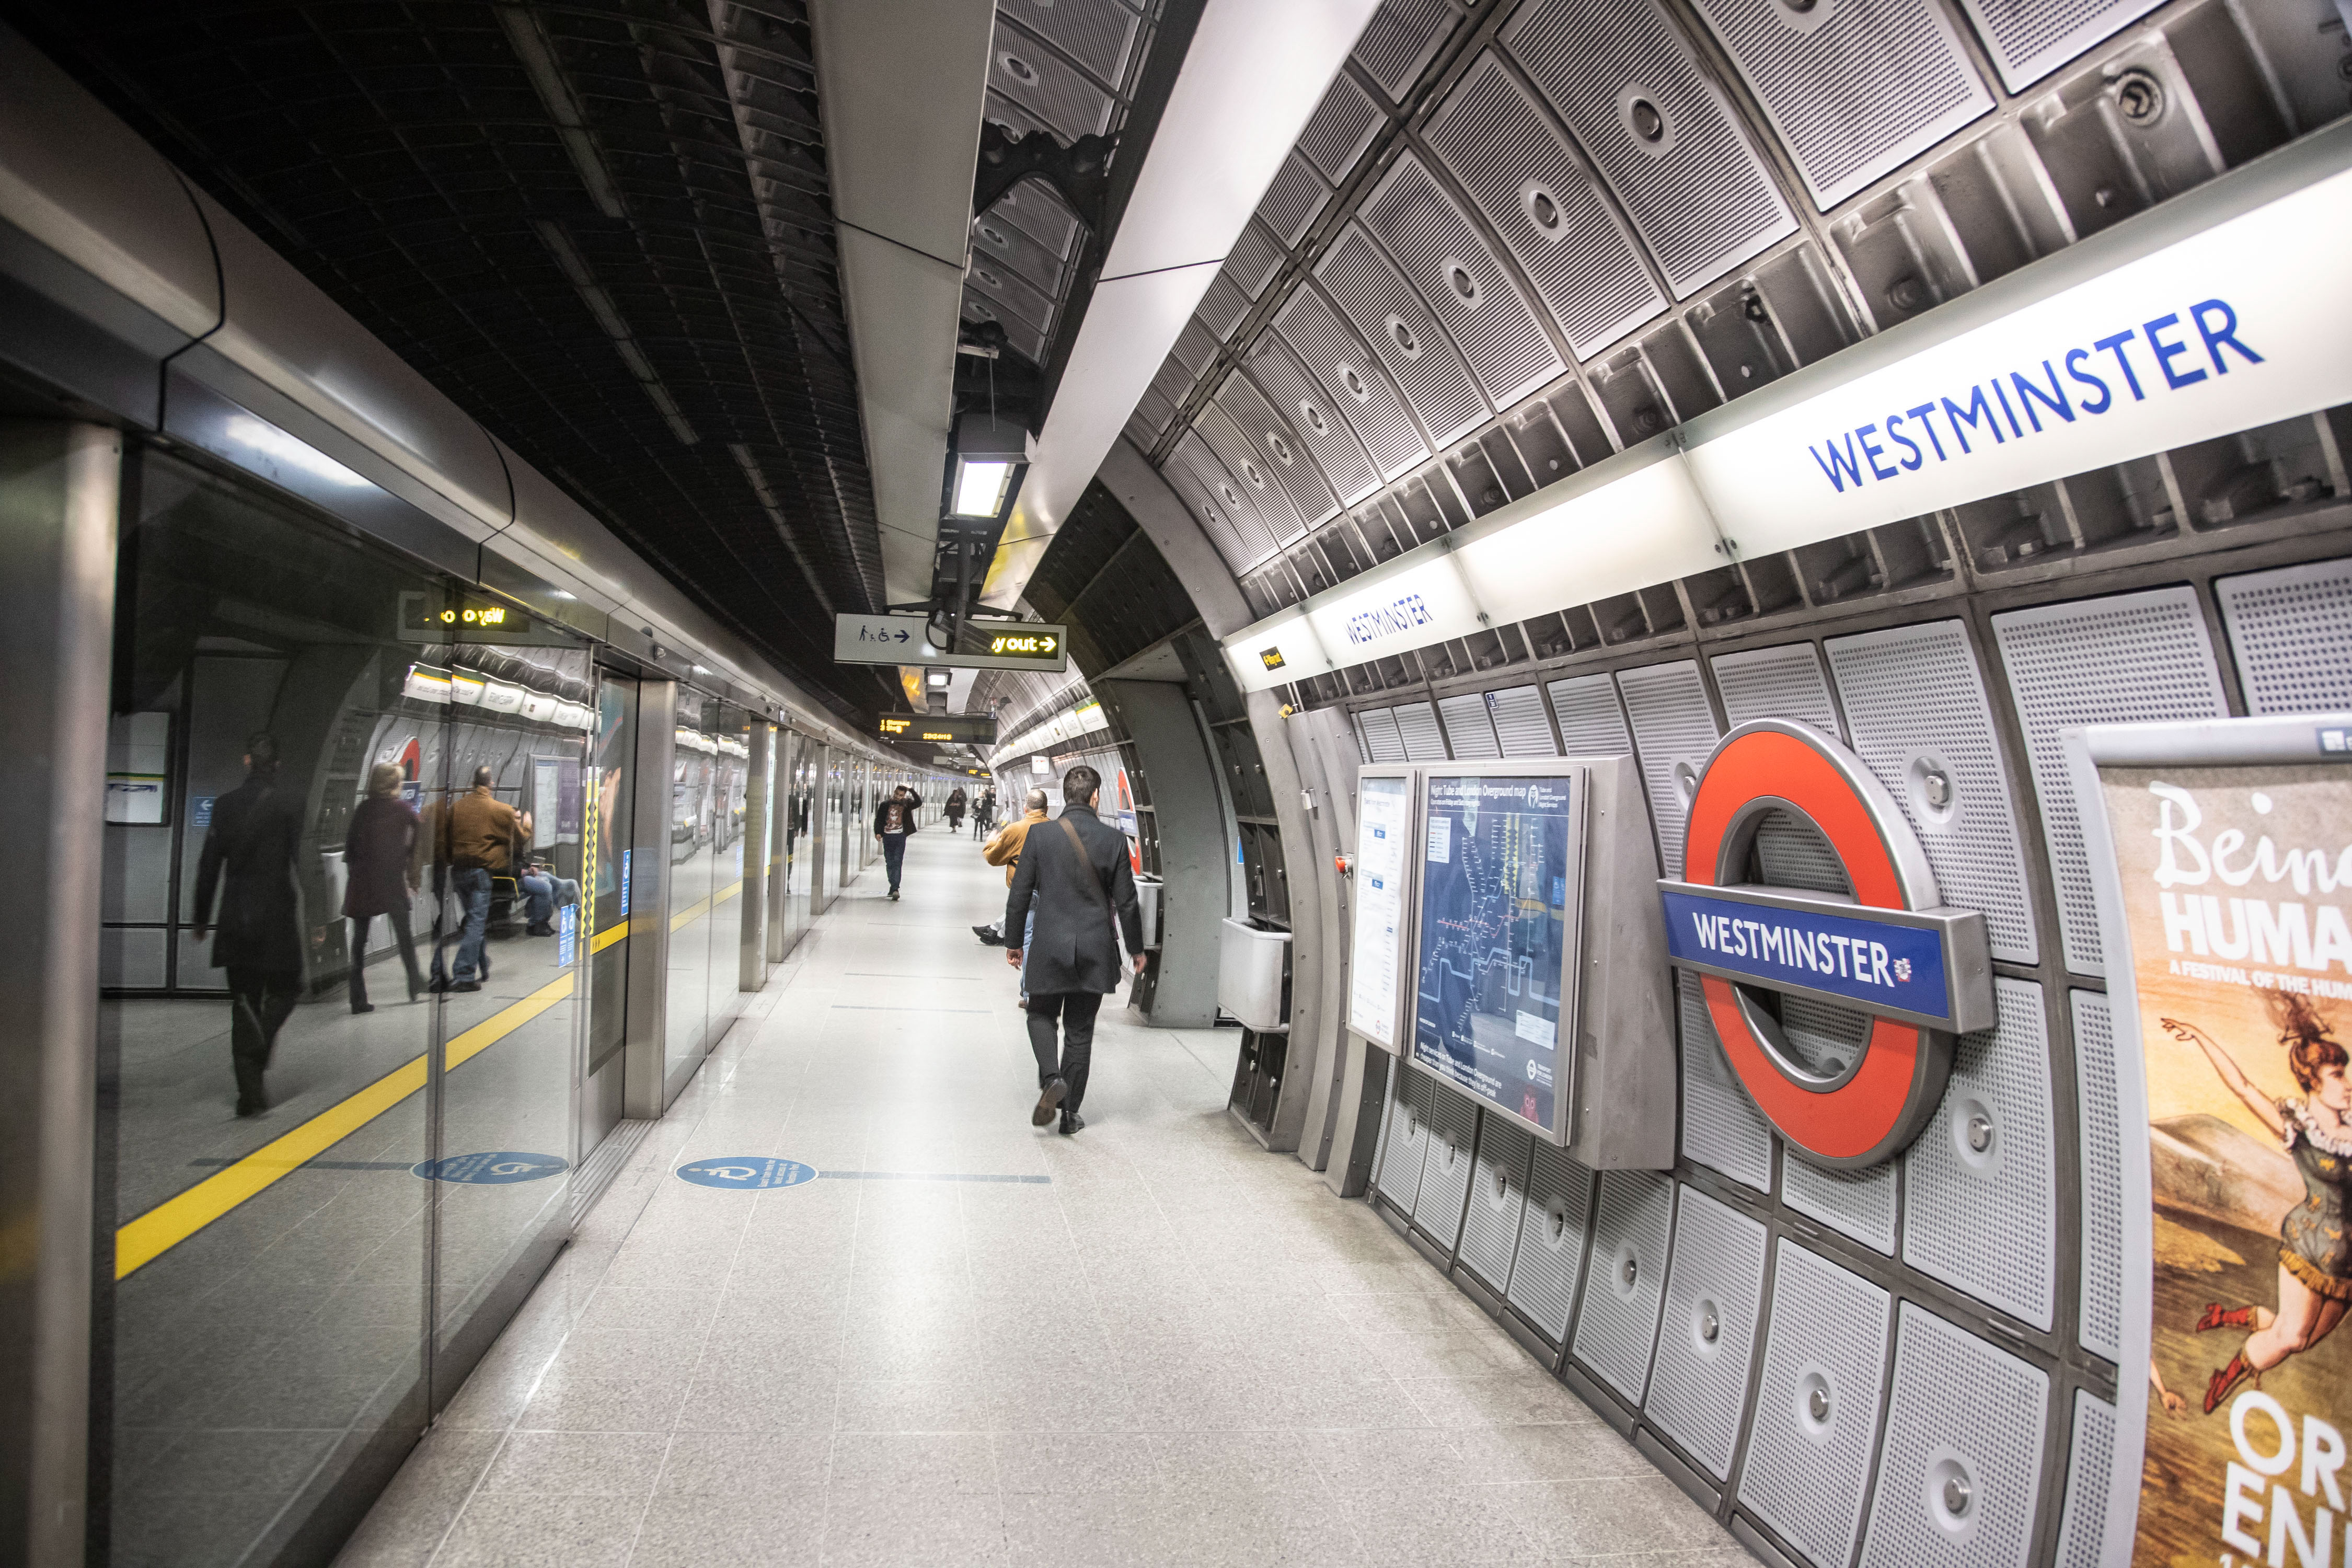 Kétezer fontos büntetést kapott a férfi, aki egy nő szoknyája alá fényképezett a londoni metrón